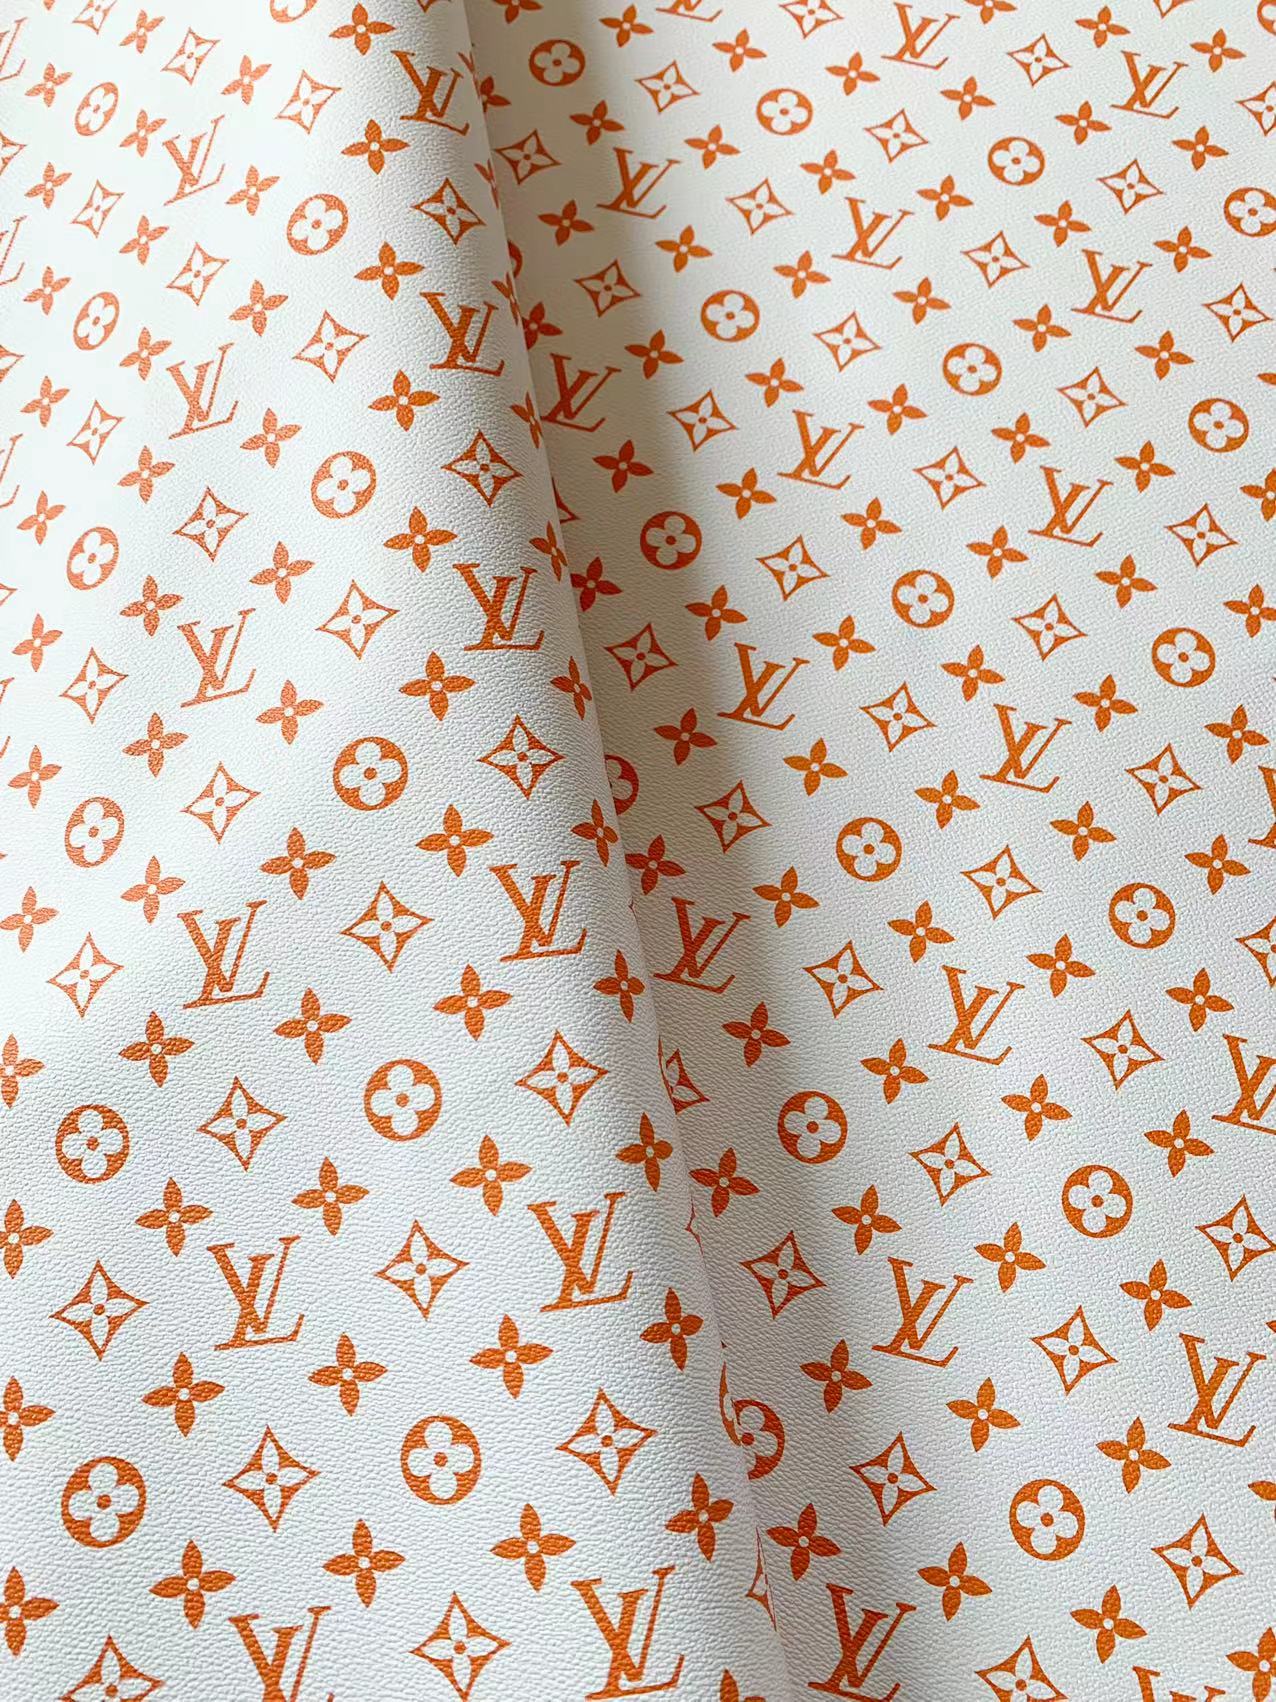 lv monogram fabric